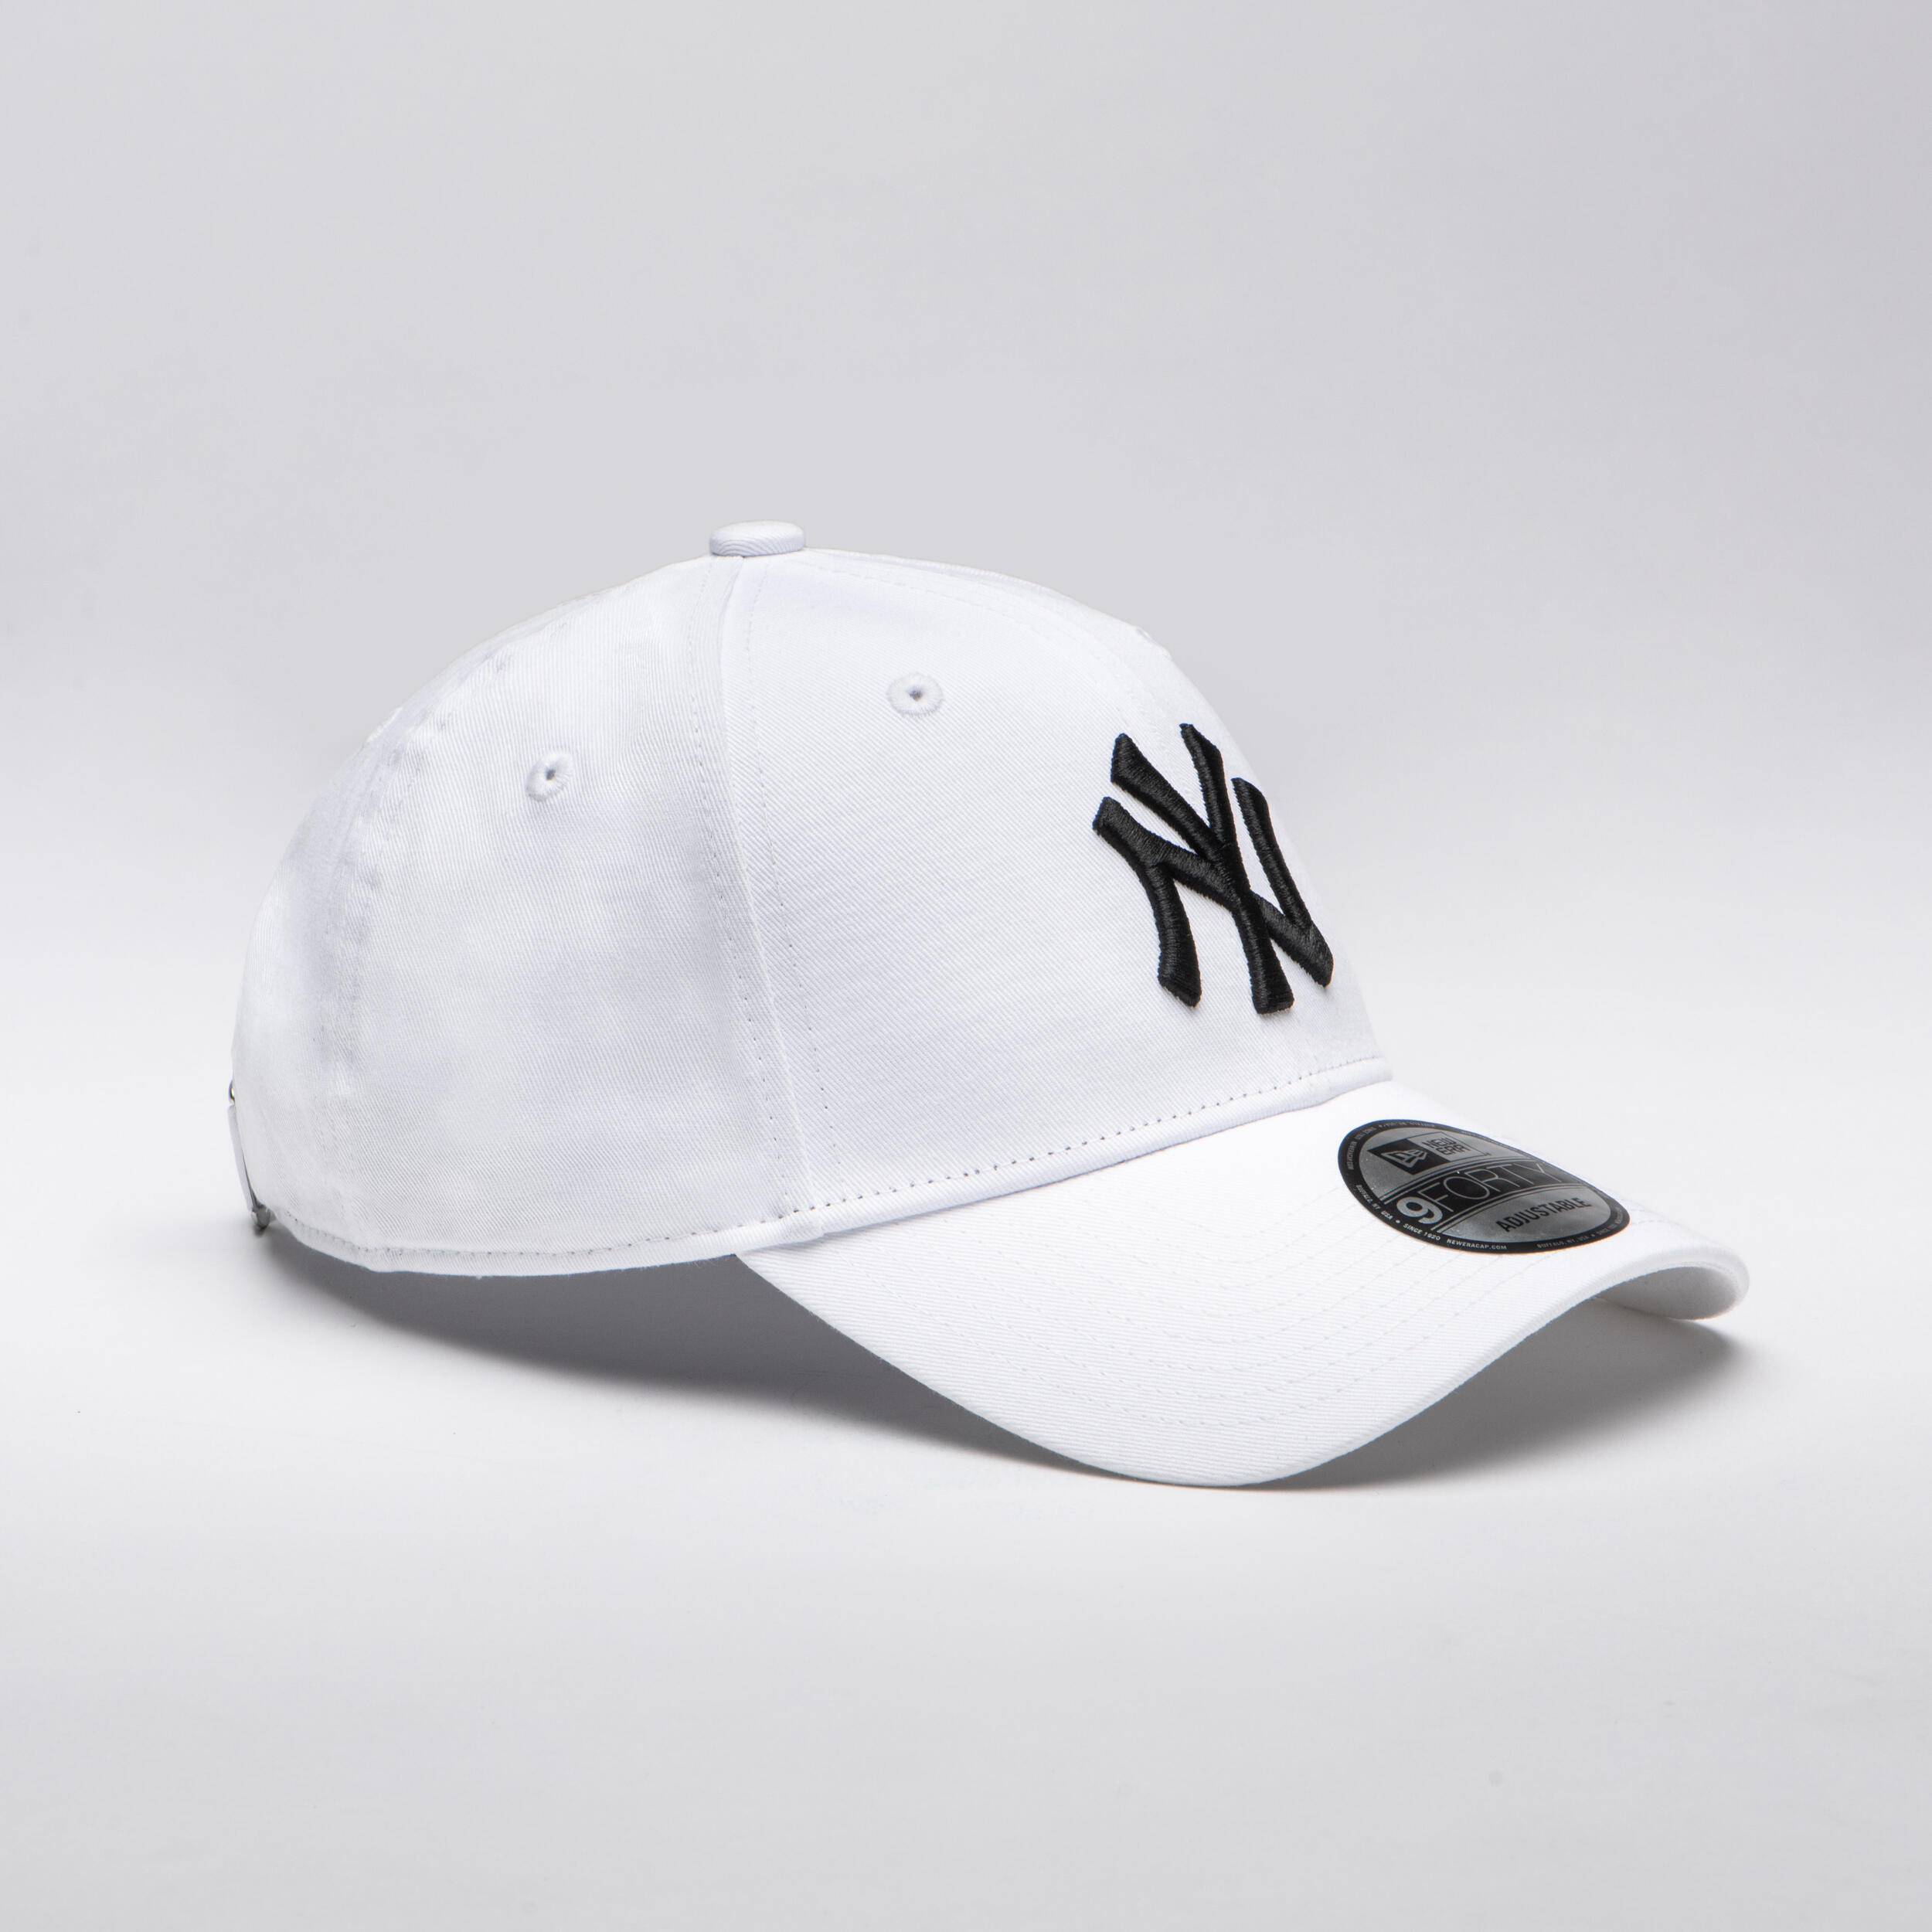 Men's / Women's MLB Baseball Cap New York Yankees - White 3/5